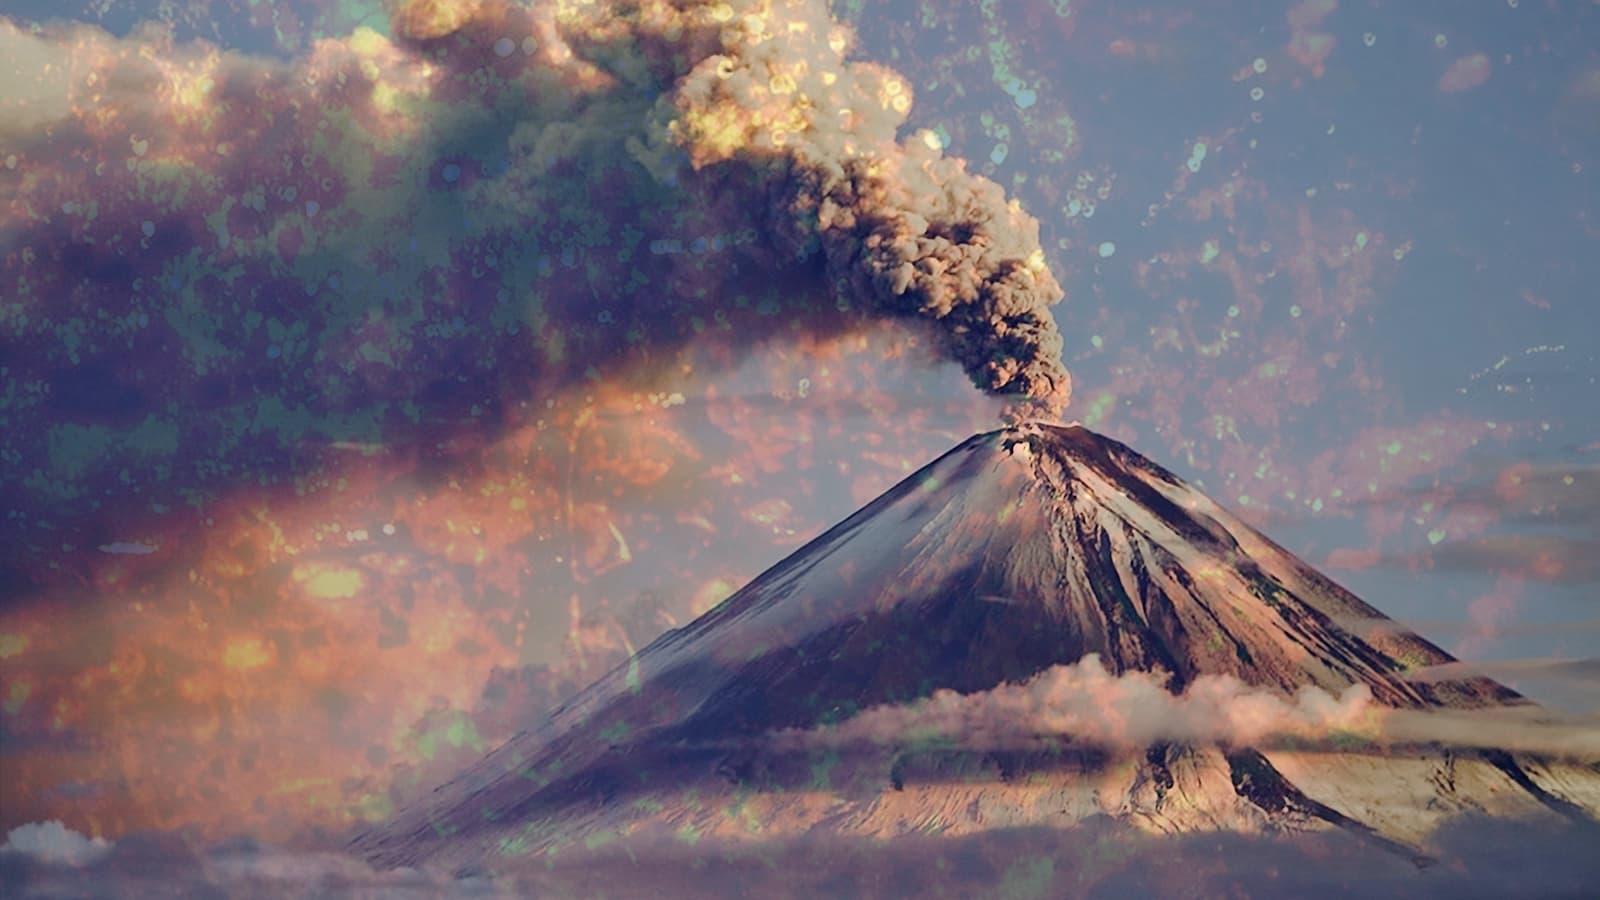 A Volcano Odyssey backdrop